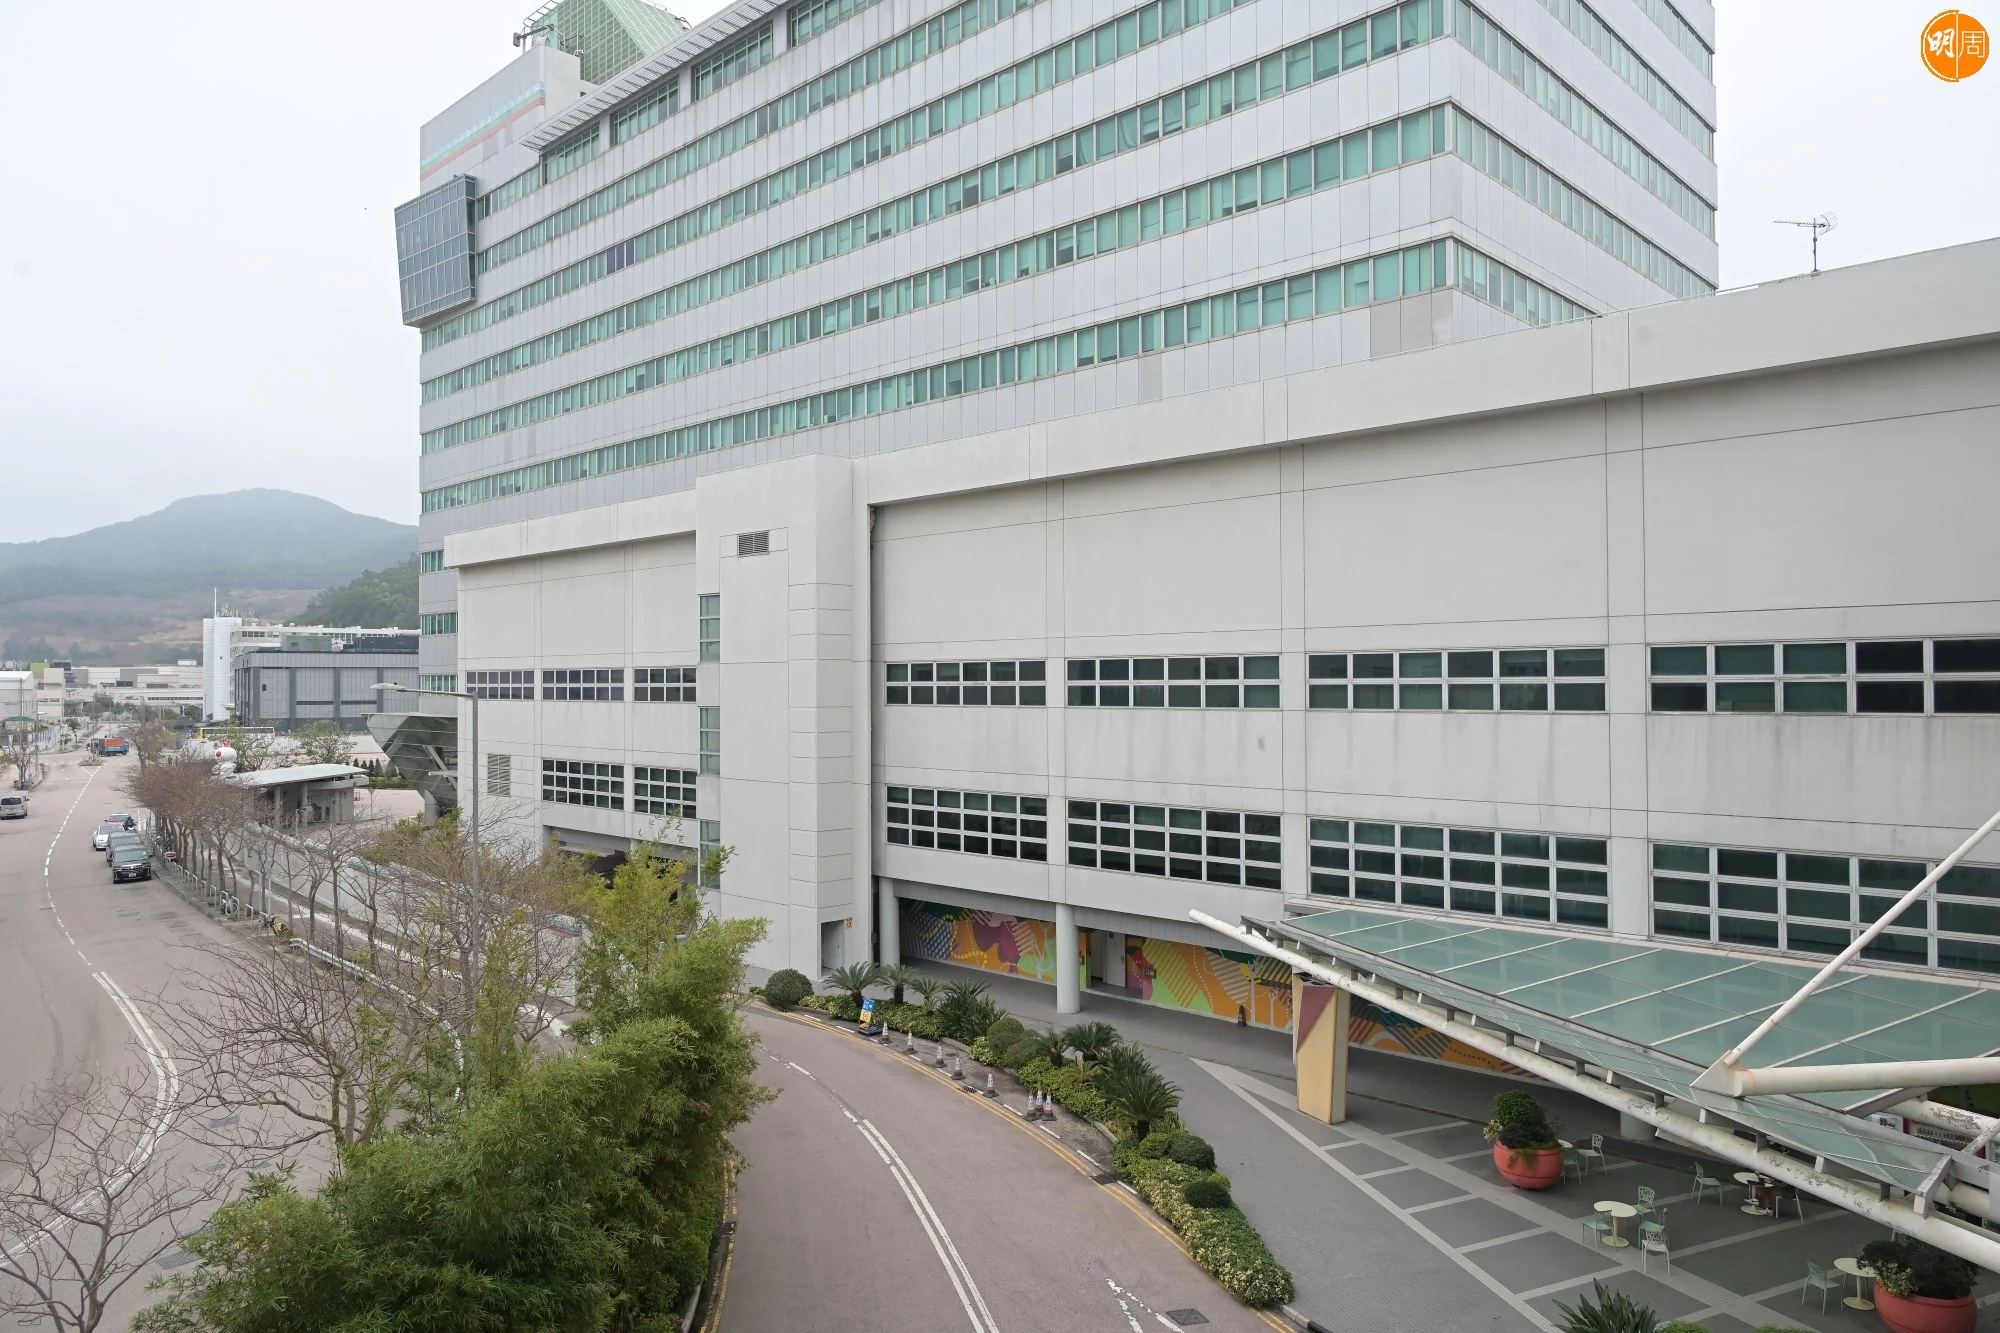 TVB表示共解僱涉事3人。